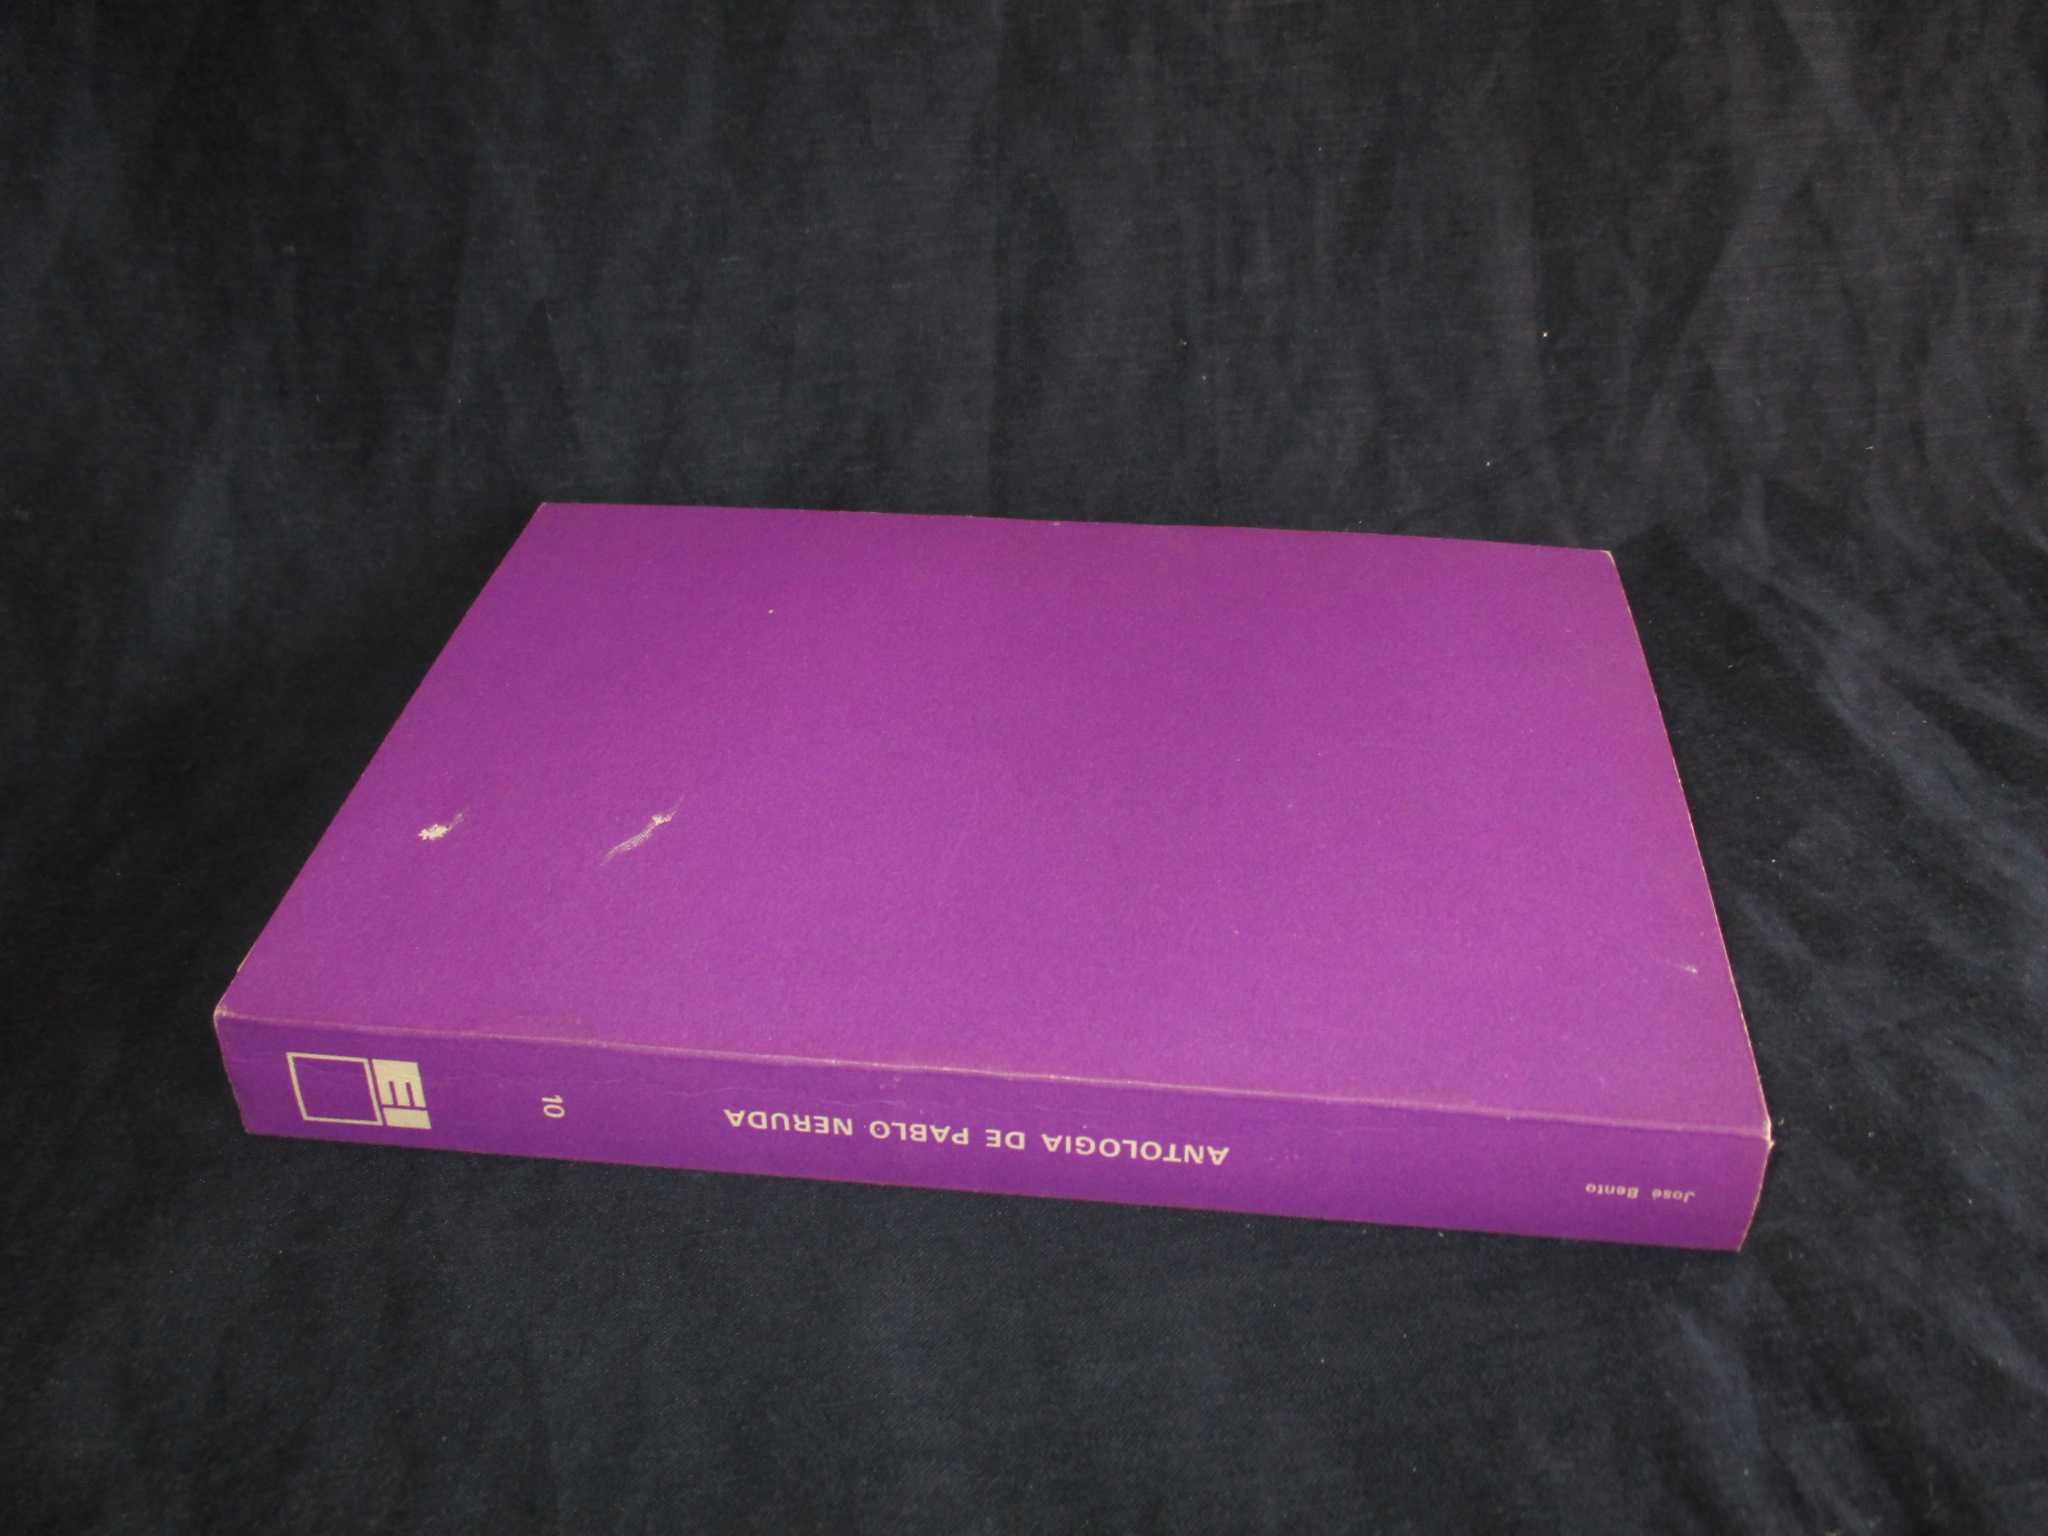 Livro Antologia de Pablo Neruda 1ª edição INOVA